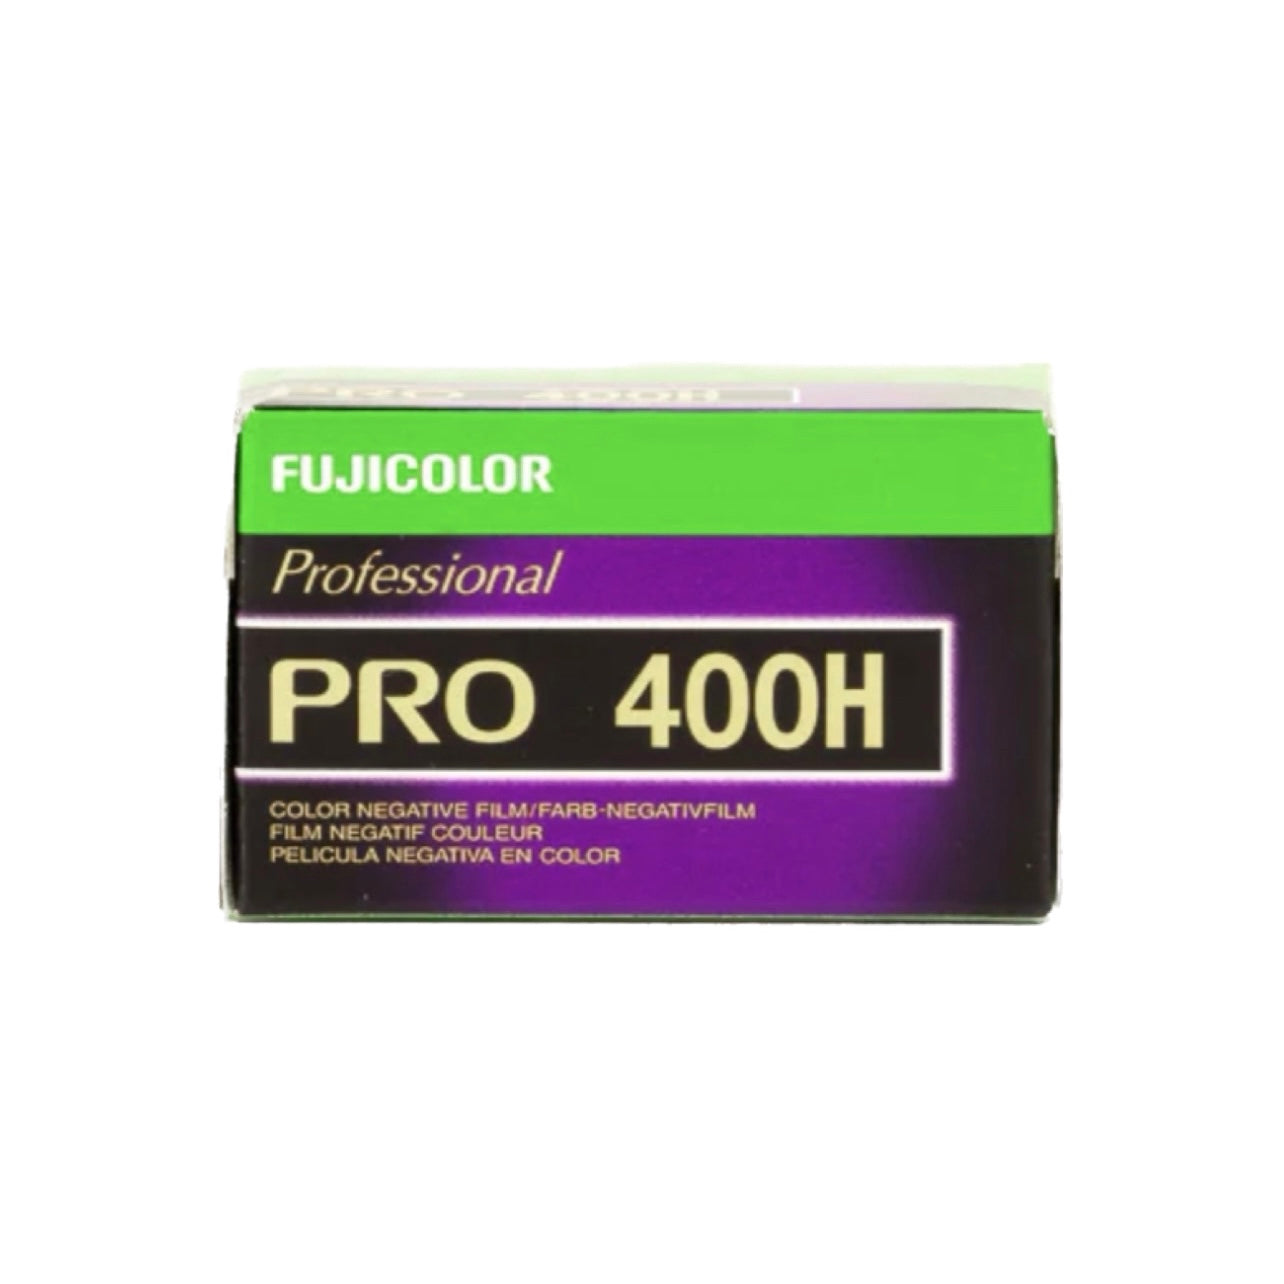 Fujicolor Pro 400H [Expired 2009]